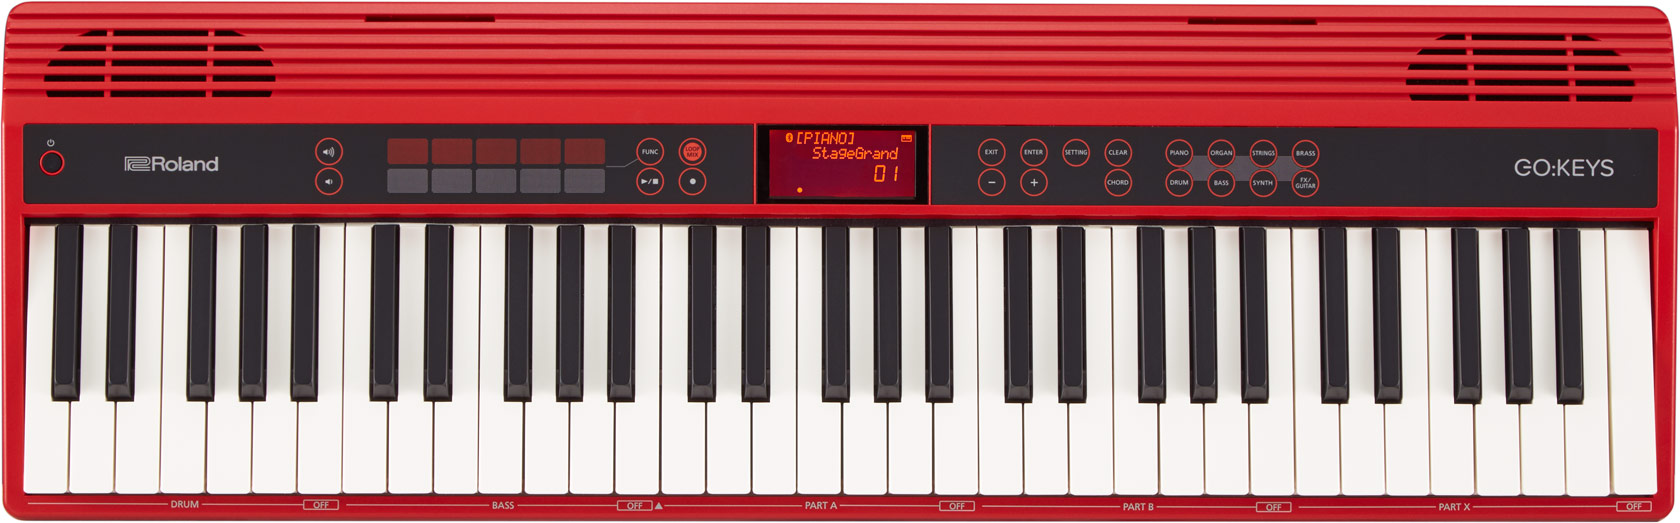 Red keyboard - Roland GO:KEYS.